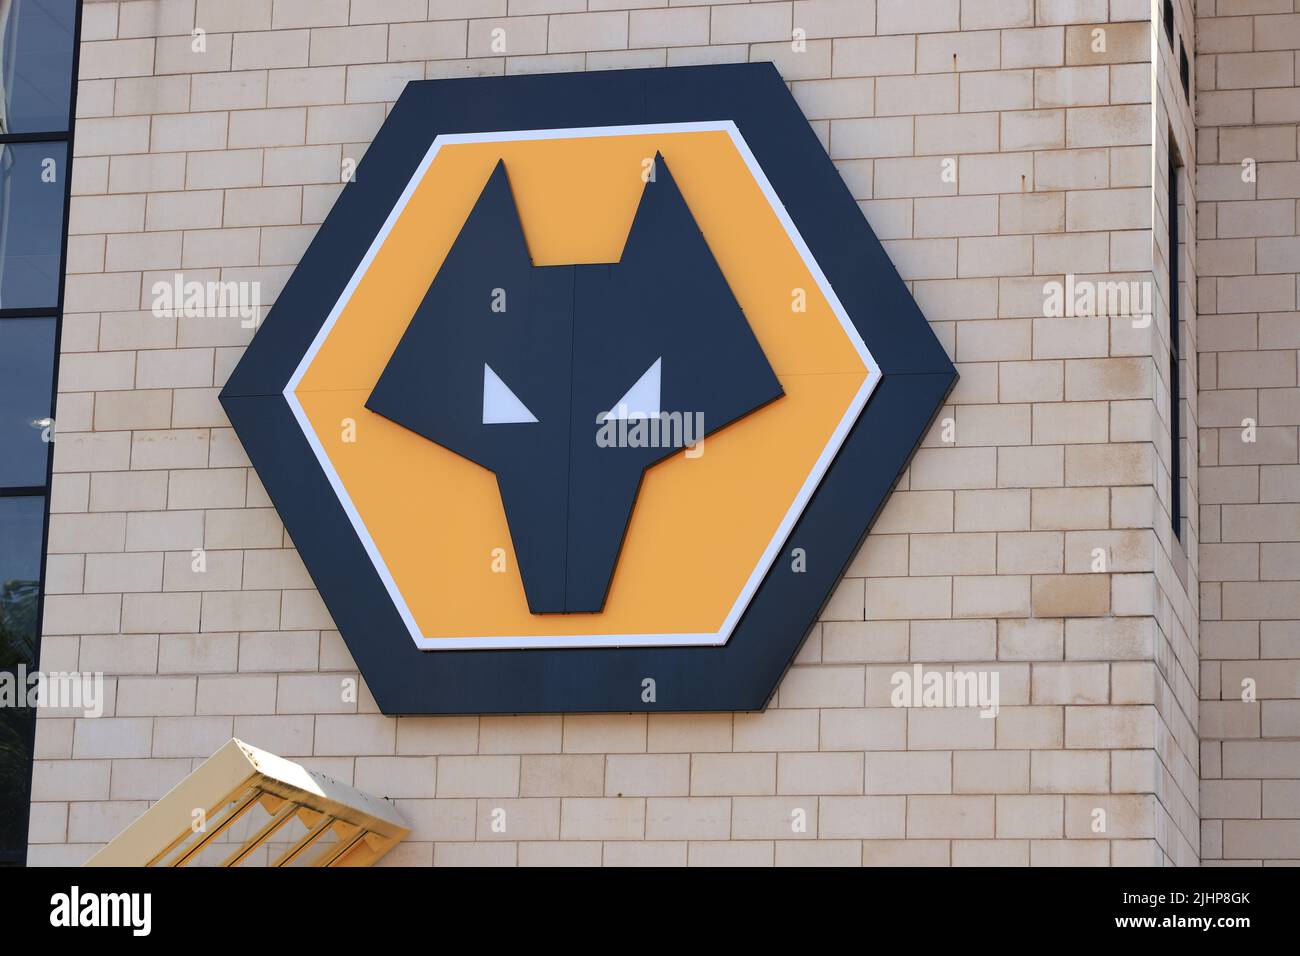 Logotipo del equipo de fútbol de la Premier League, Wolverhampton Wanderers en Wolverhampton, Reino Unido Foto de stock